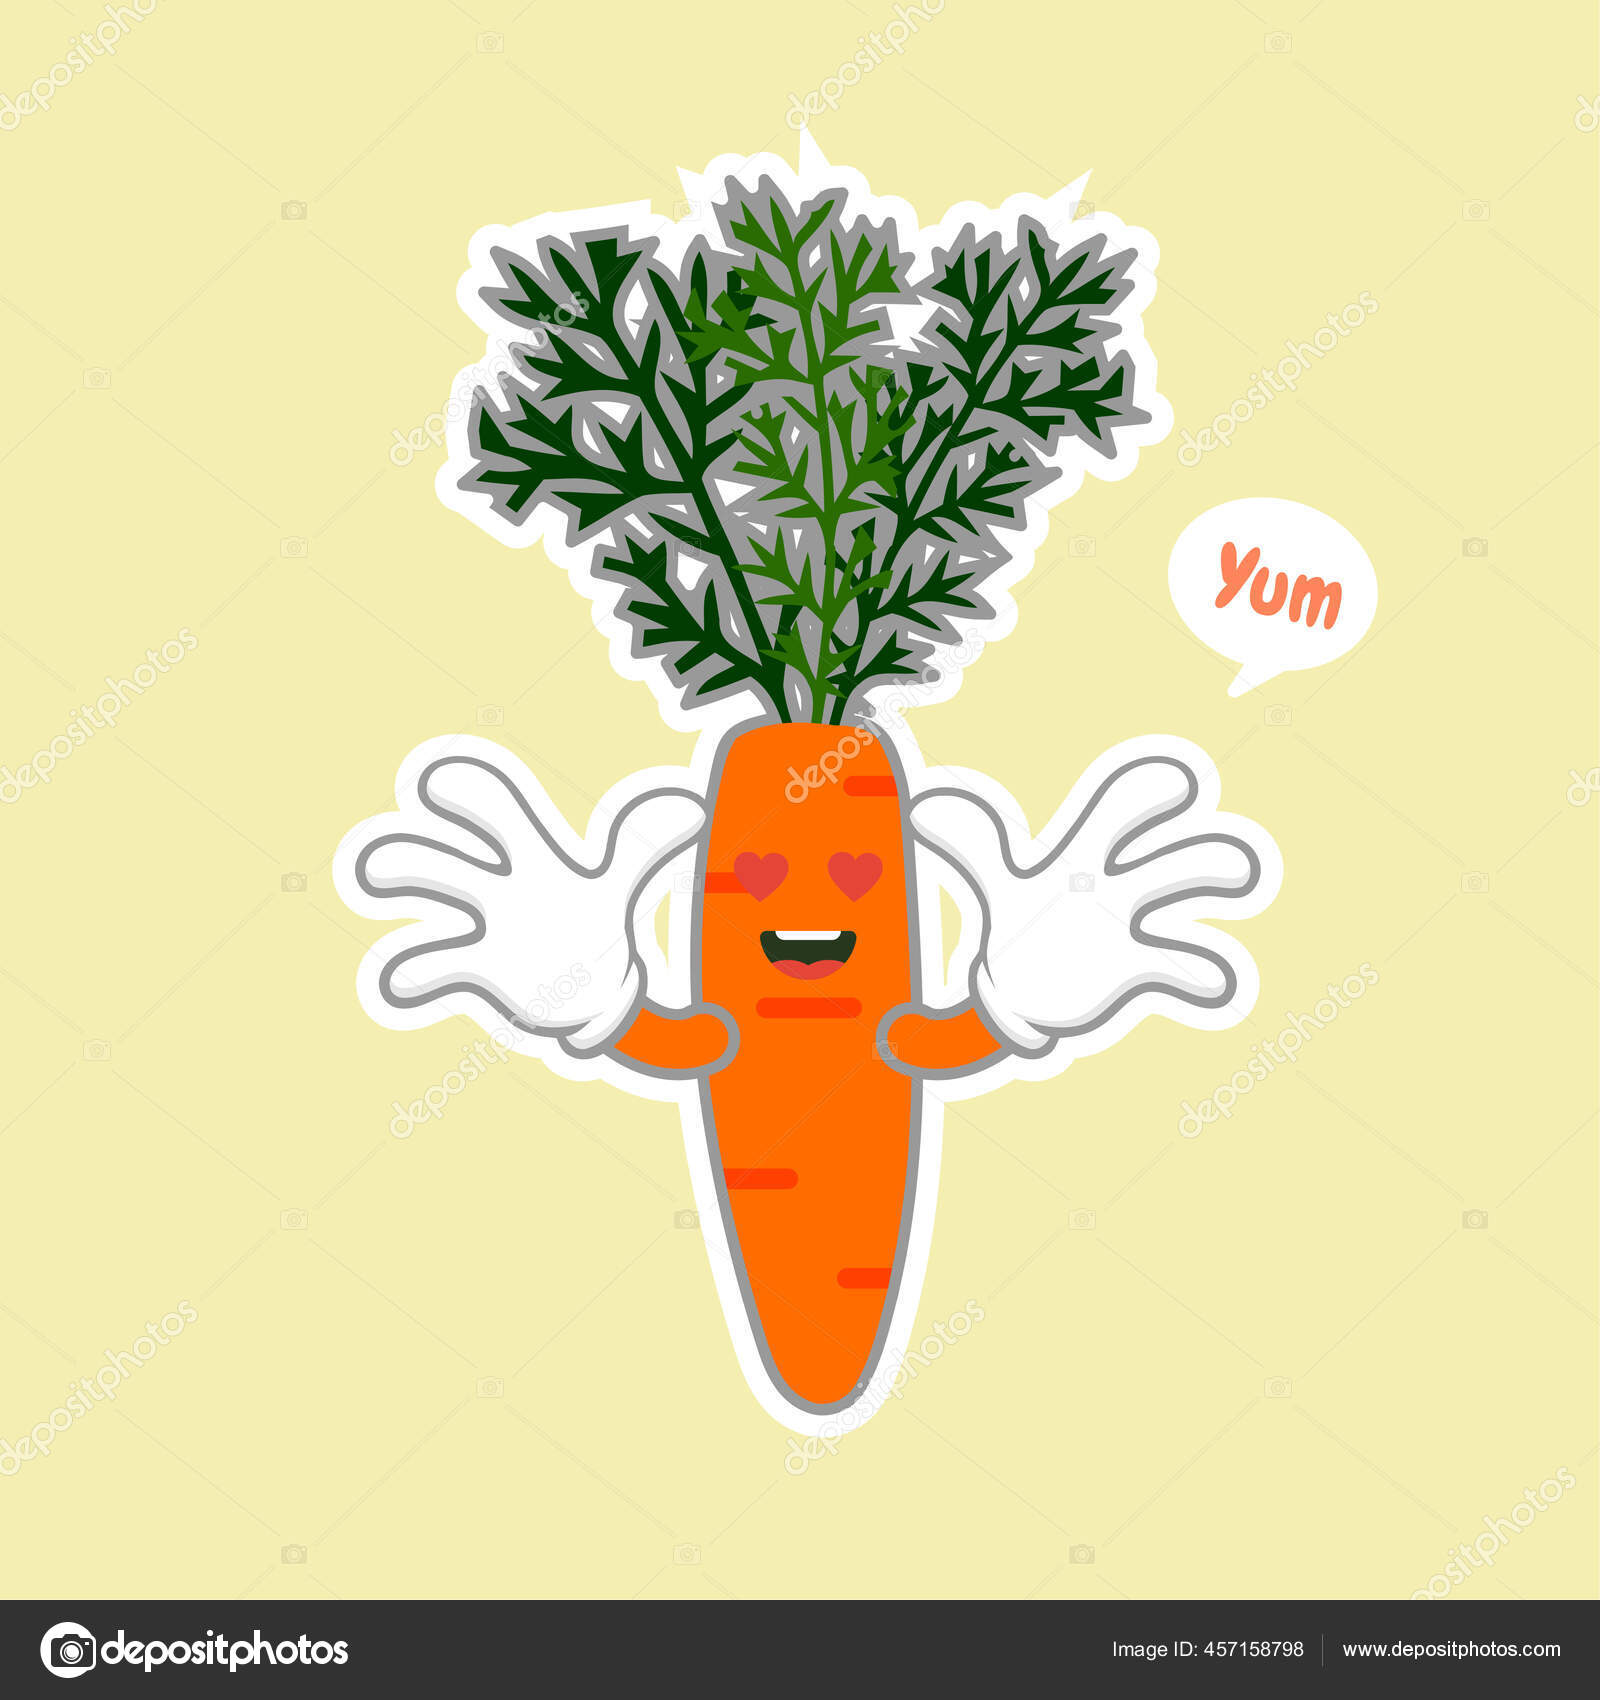 Desenho animado design de vegetais alimentos saudáveis vetor(es